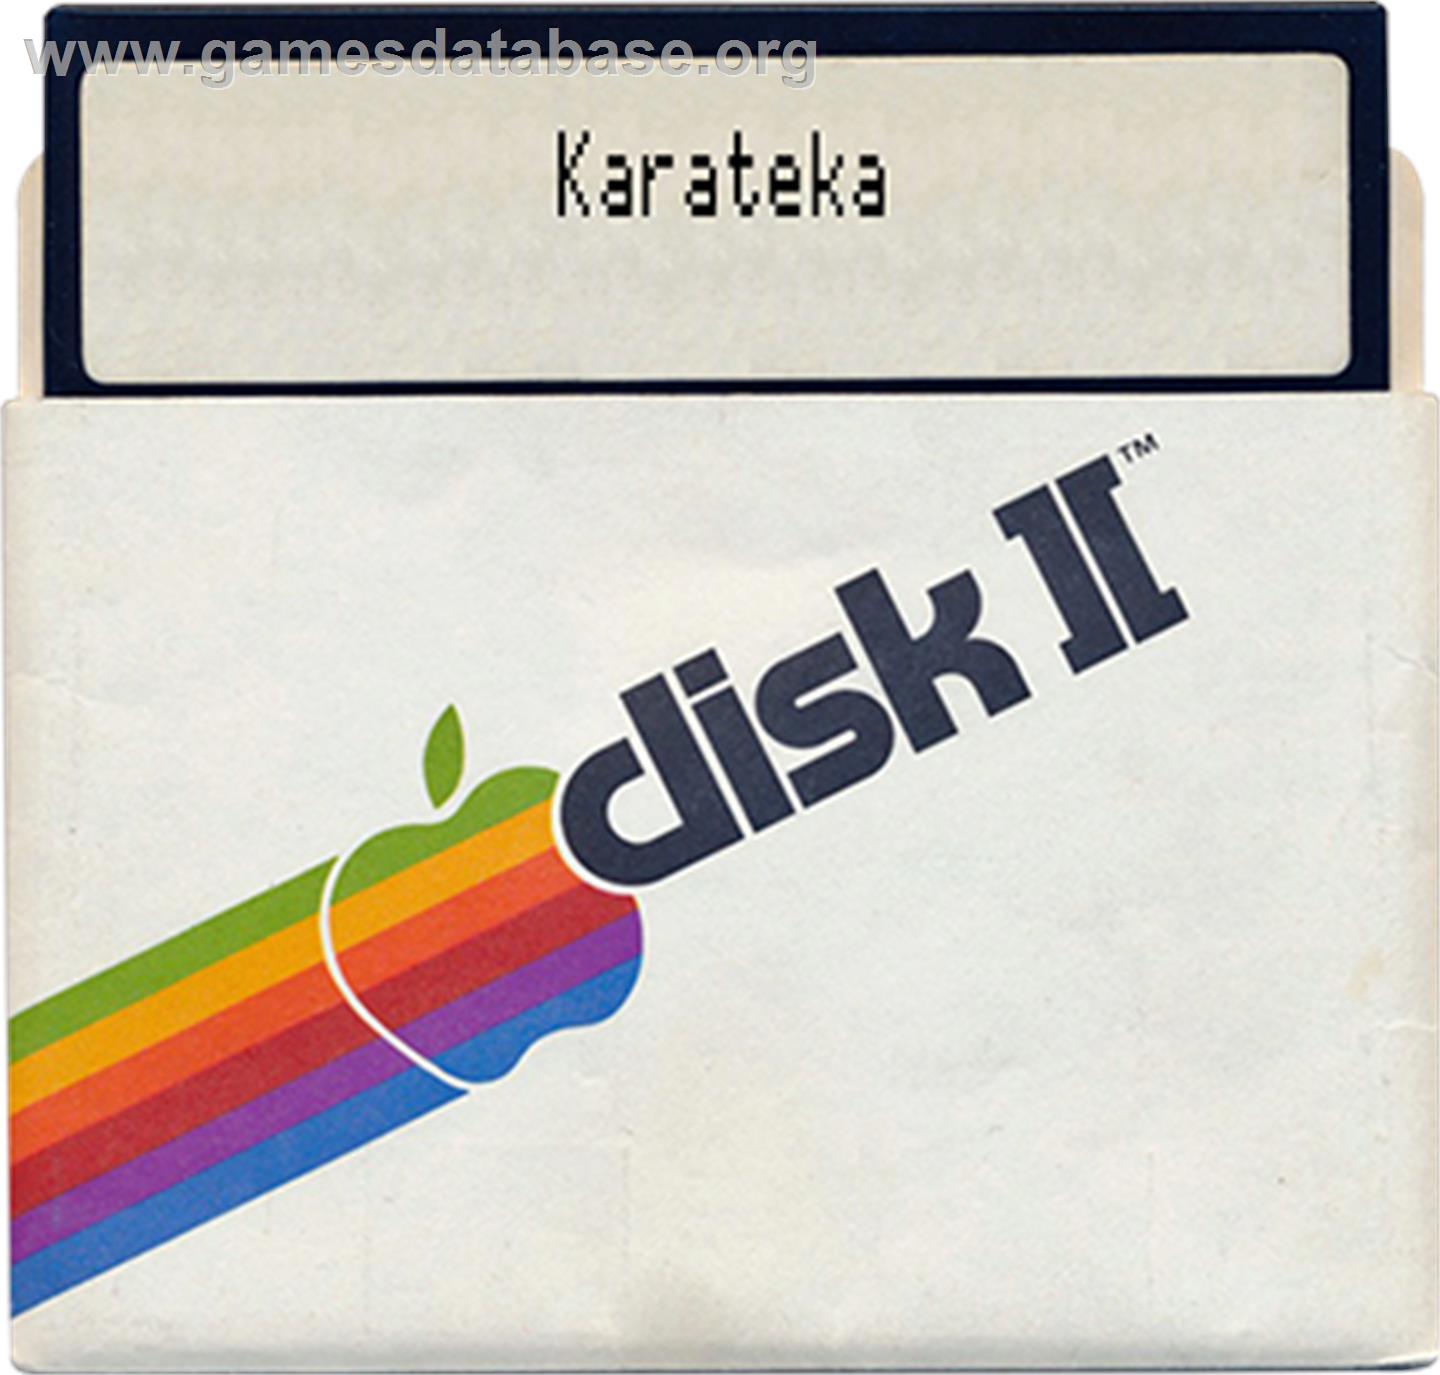 Karateka - Apple II - Artwork - Disc